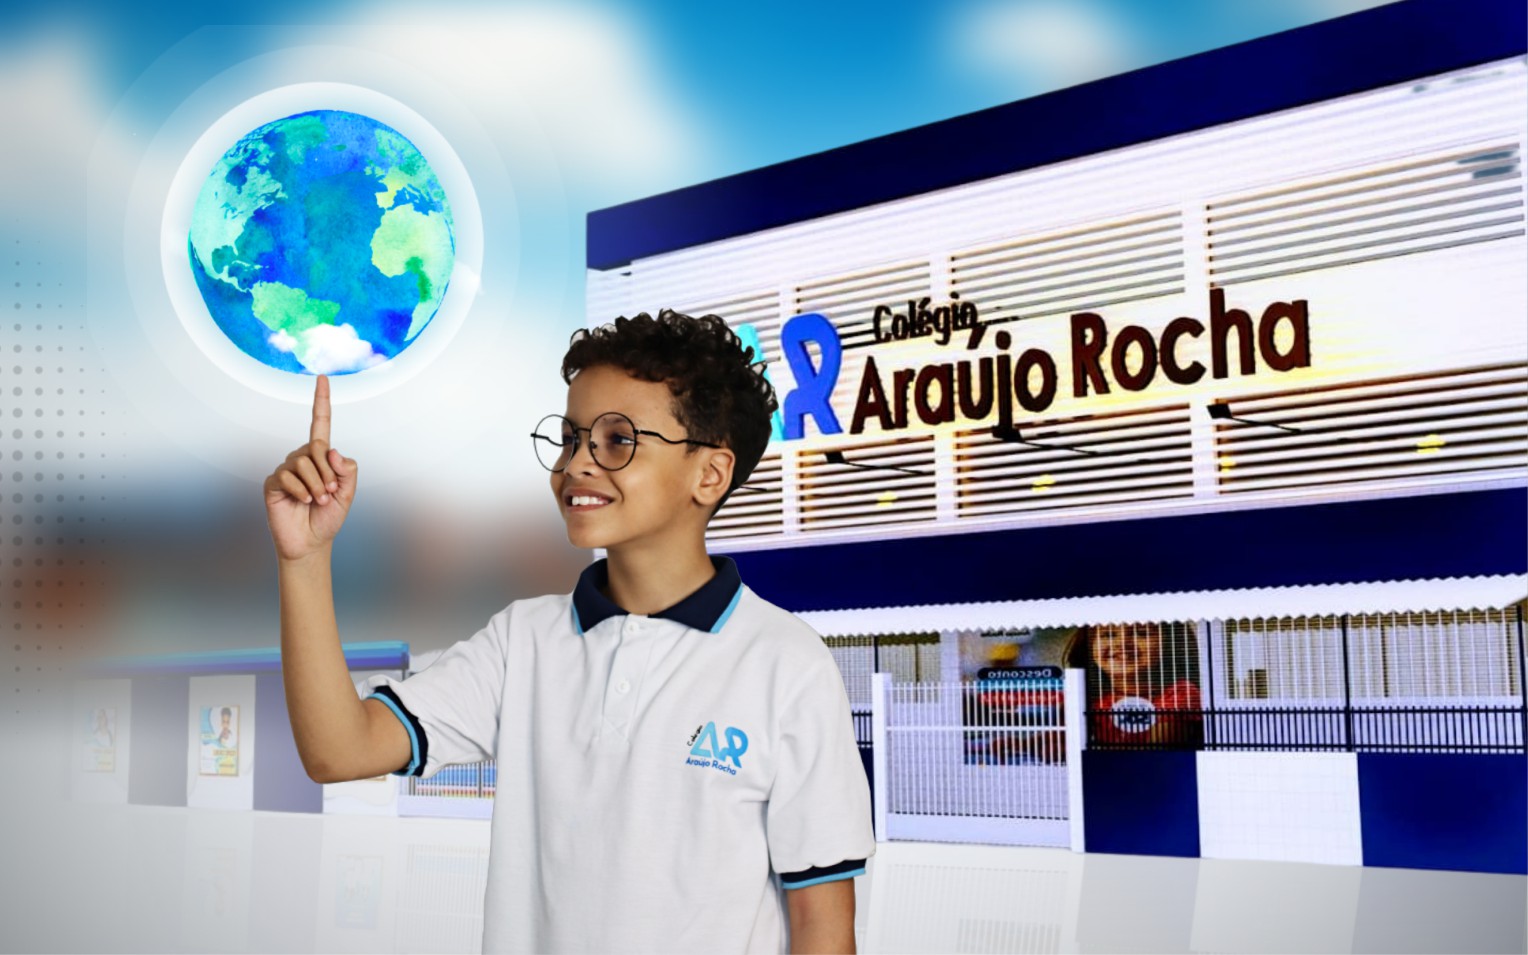 Colégio Araújo Rocha expande suas fronteiras com a inauguração de uma nova unidade na Taquara em 2024